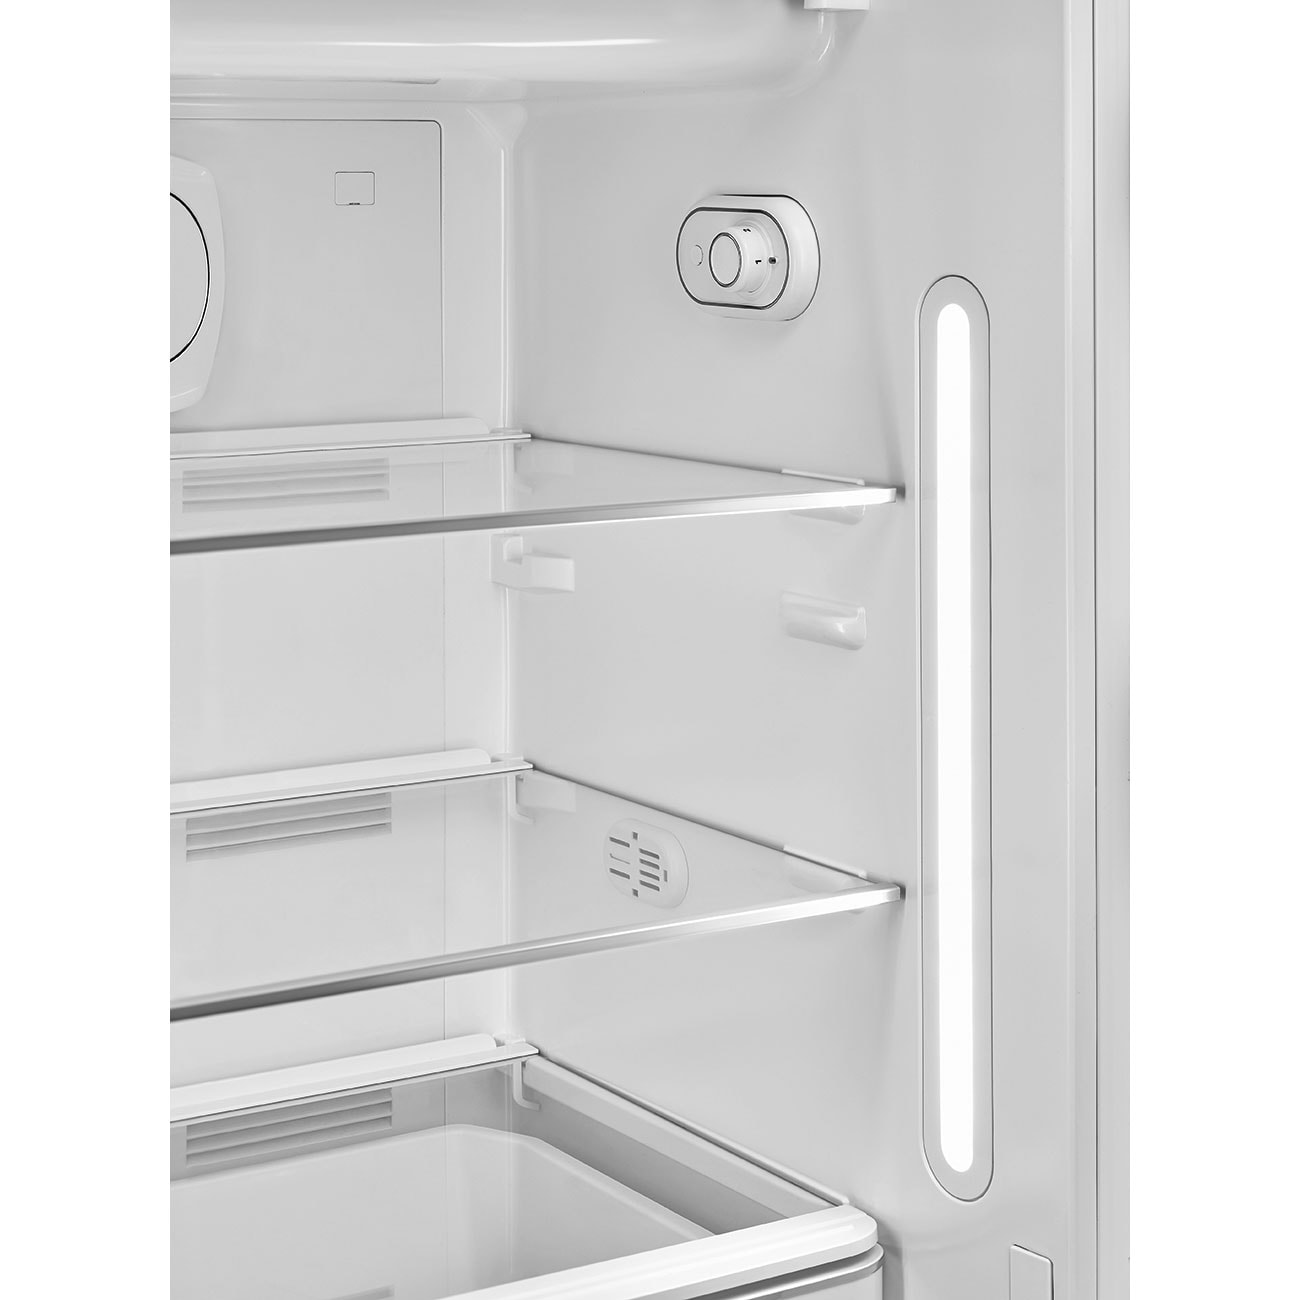 FAB28RDG SMEG Réfrigérateur 1 porte pas cher ✔️ Garantie 5 ans OFFERTE